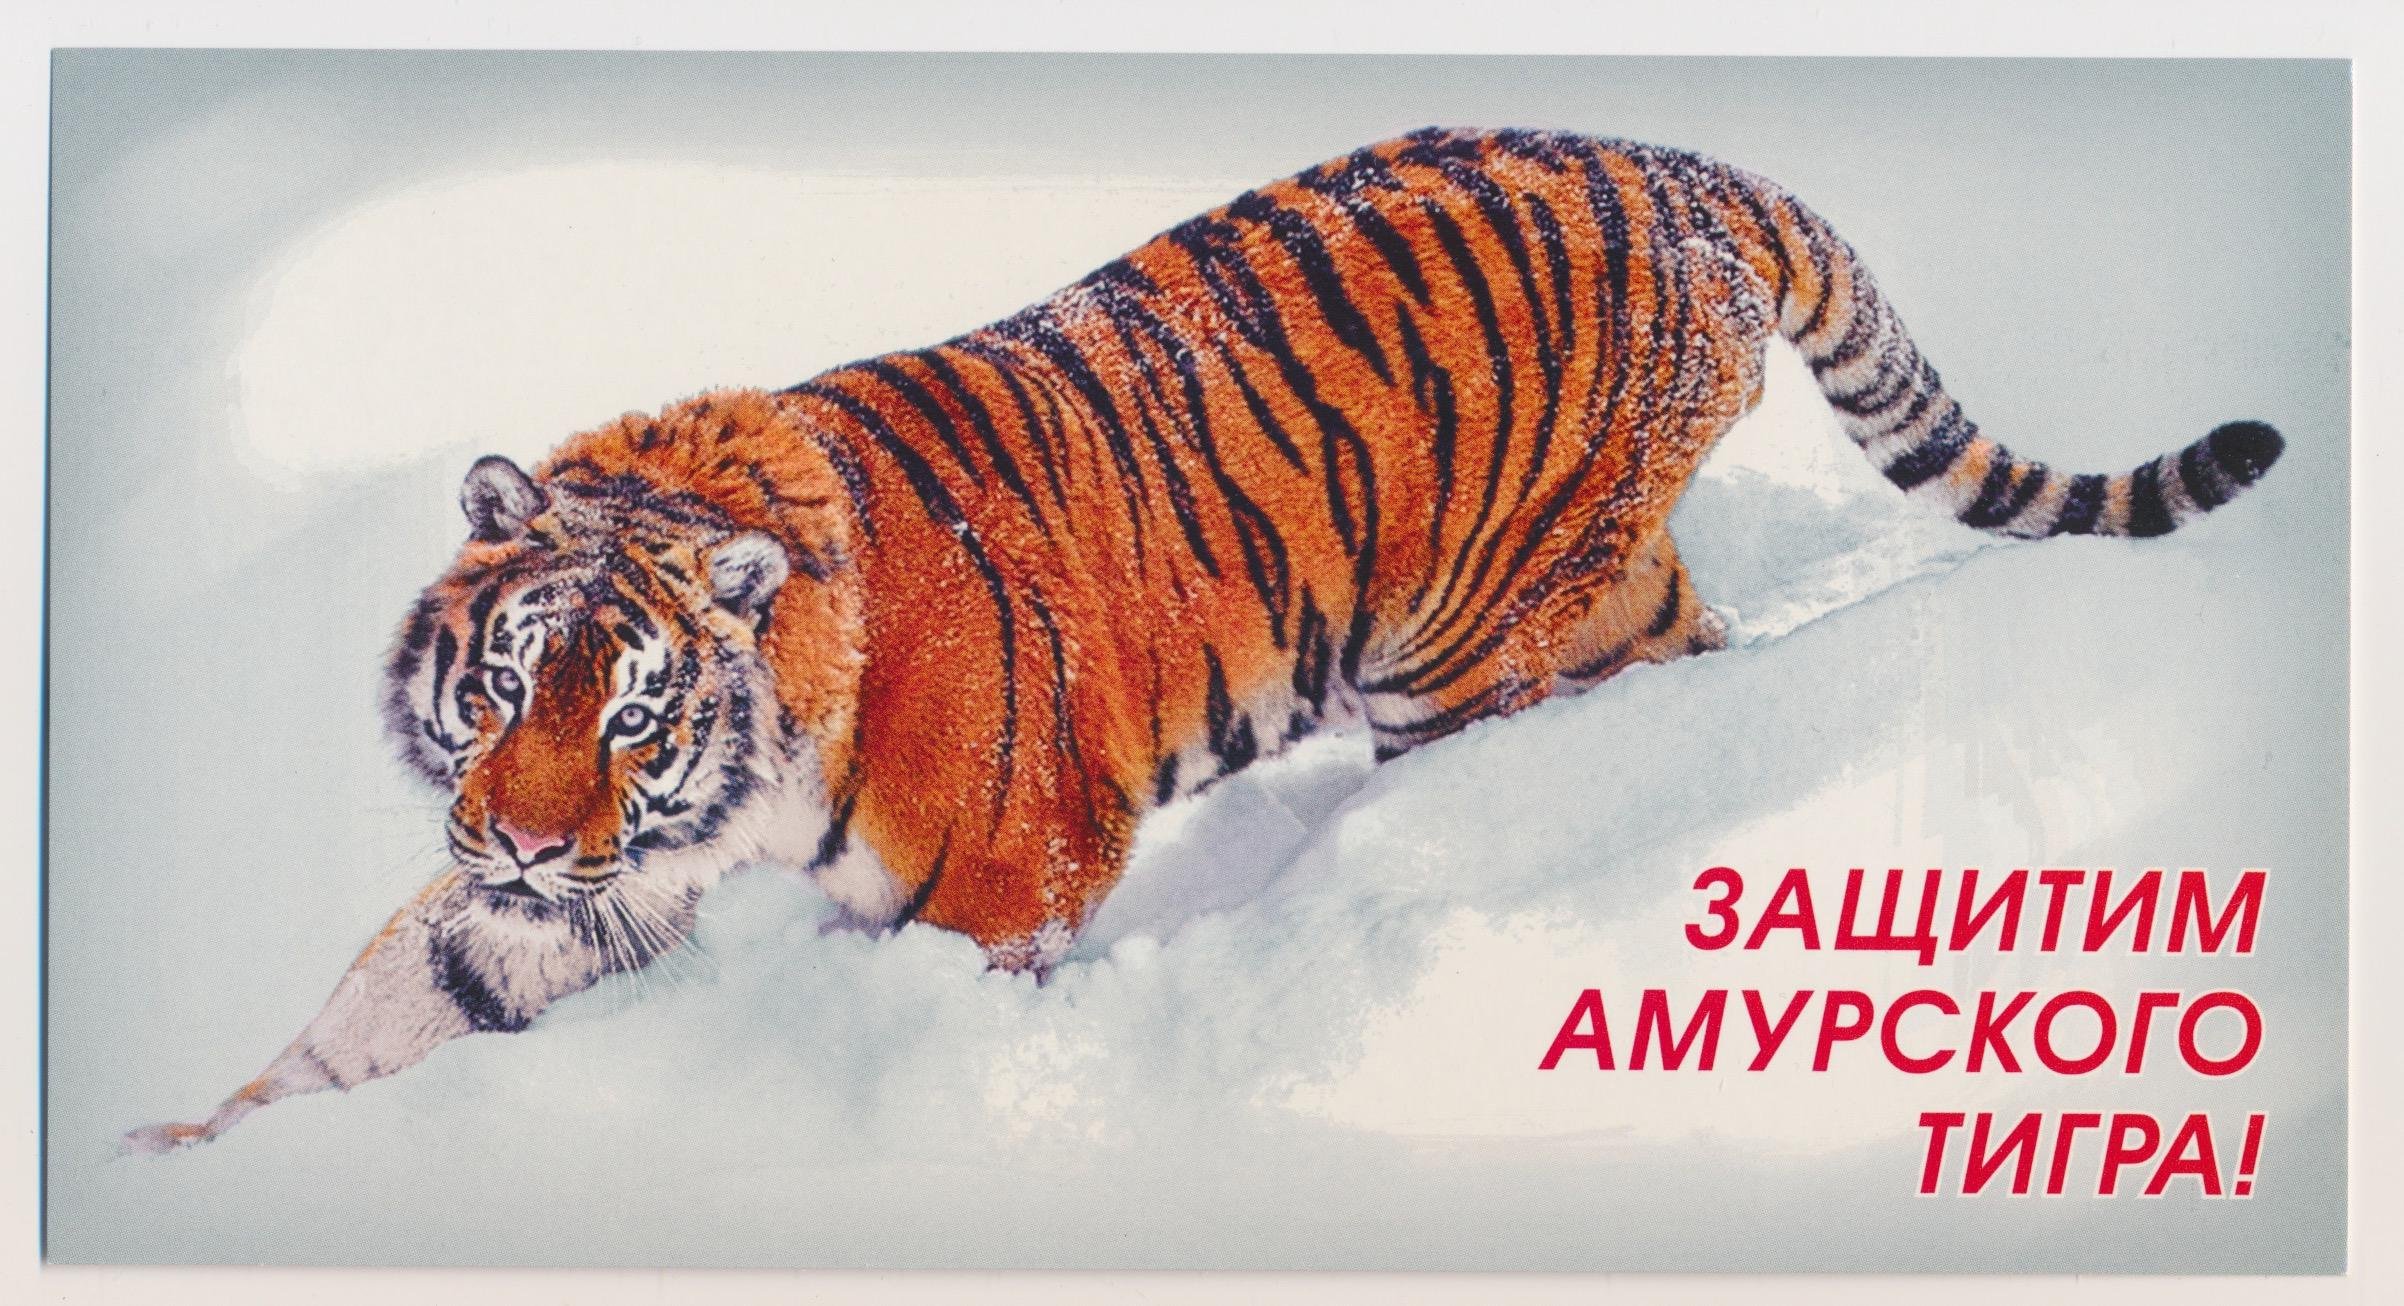 Восточный слоган. Амурский тигр. День Амурский тигр. Амурский тигр достояние России. Защита Амурского тигра.